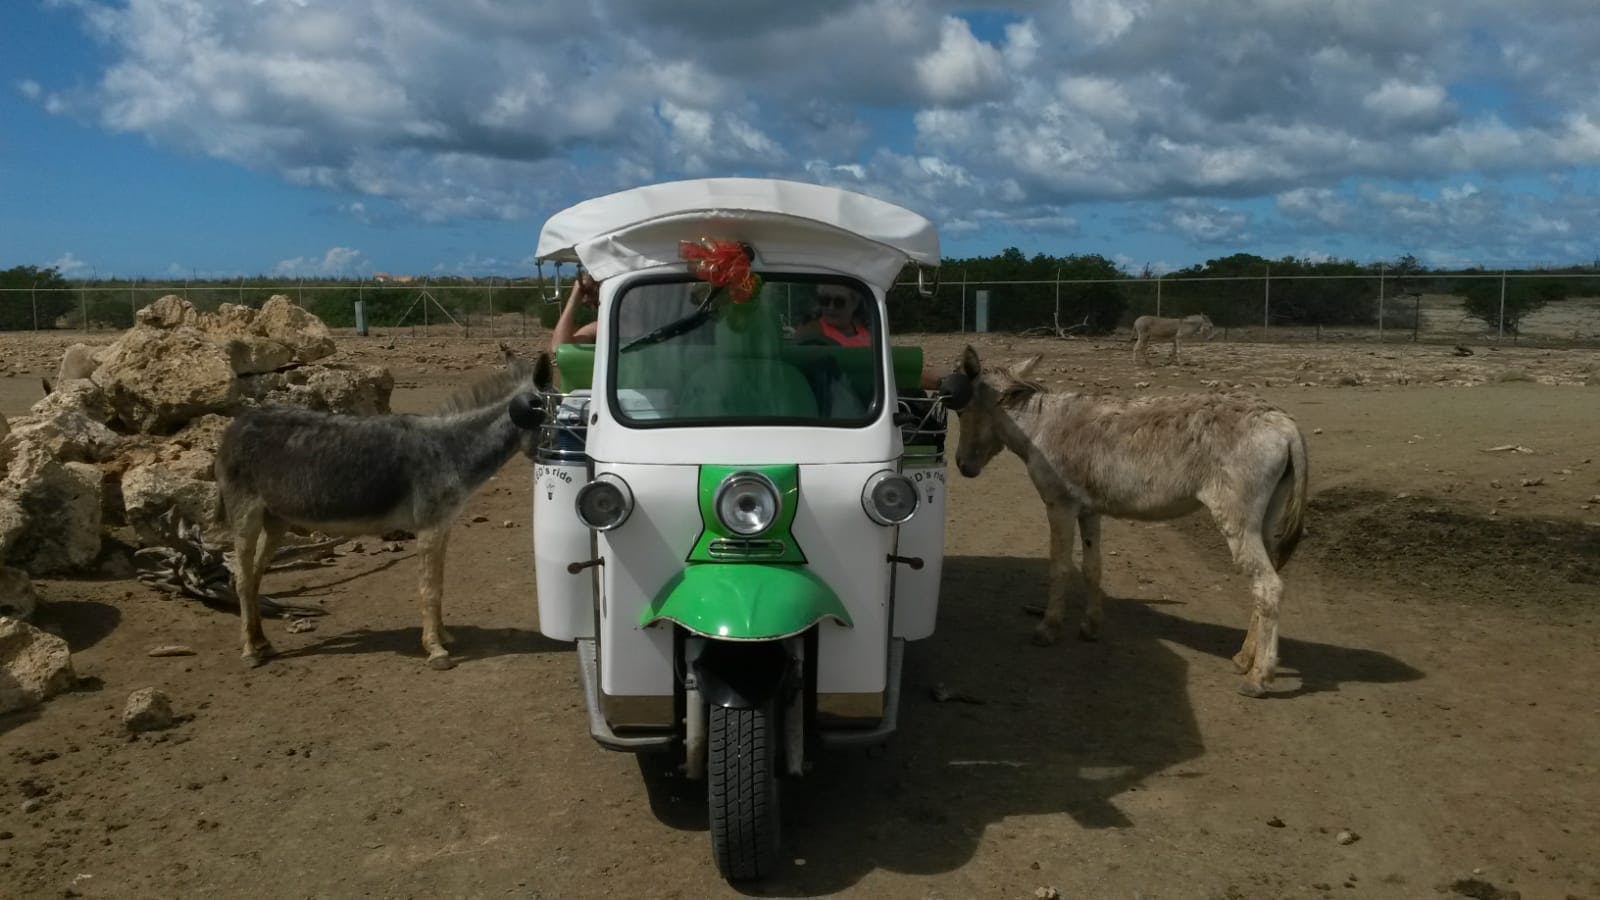 Bezoek ezelopvangcentrum per tuktuk